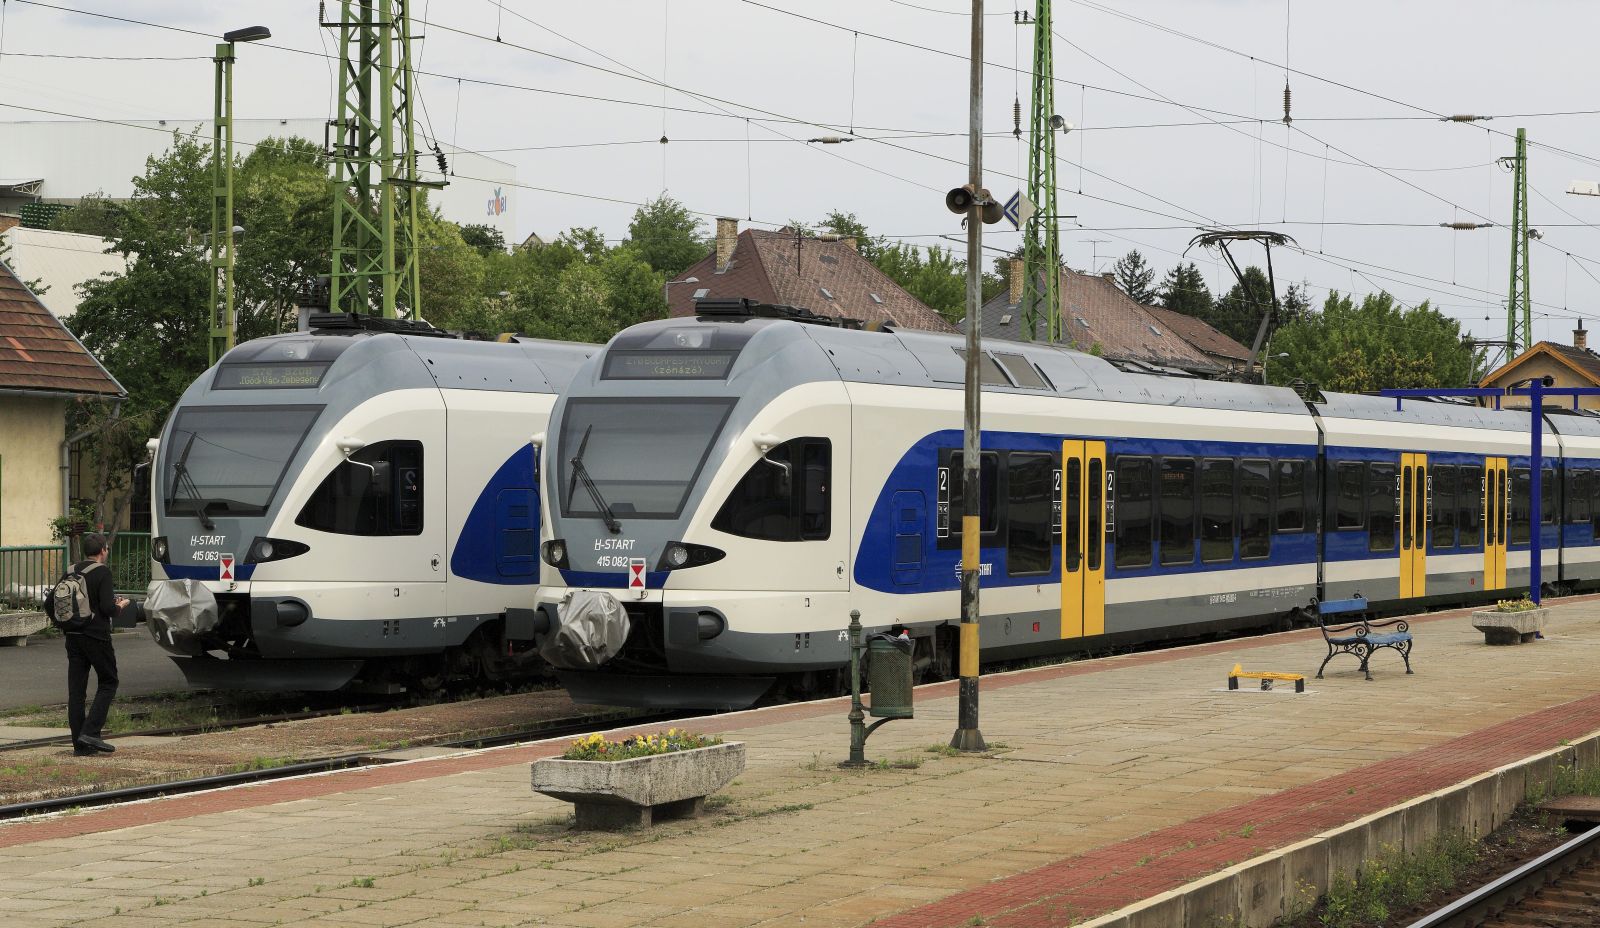 Folytatódnak a pályakarbantartási munkák a Székesfehérvár - Budapest vasútvonalon